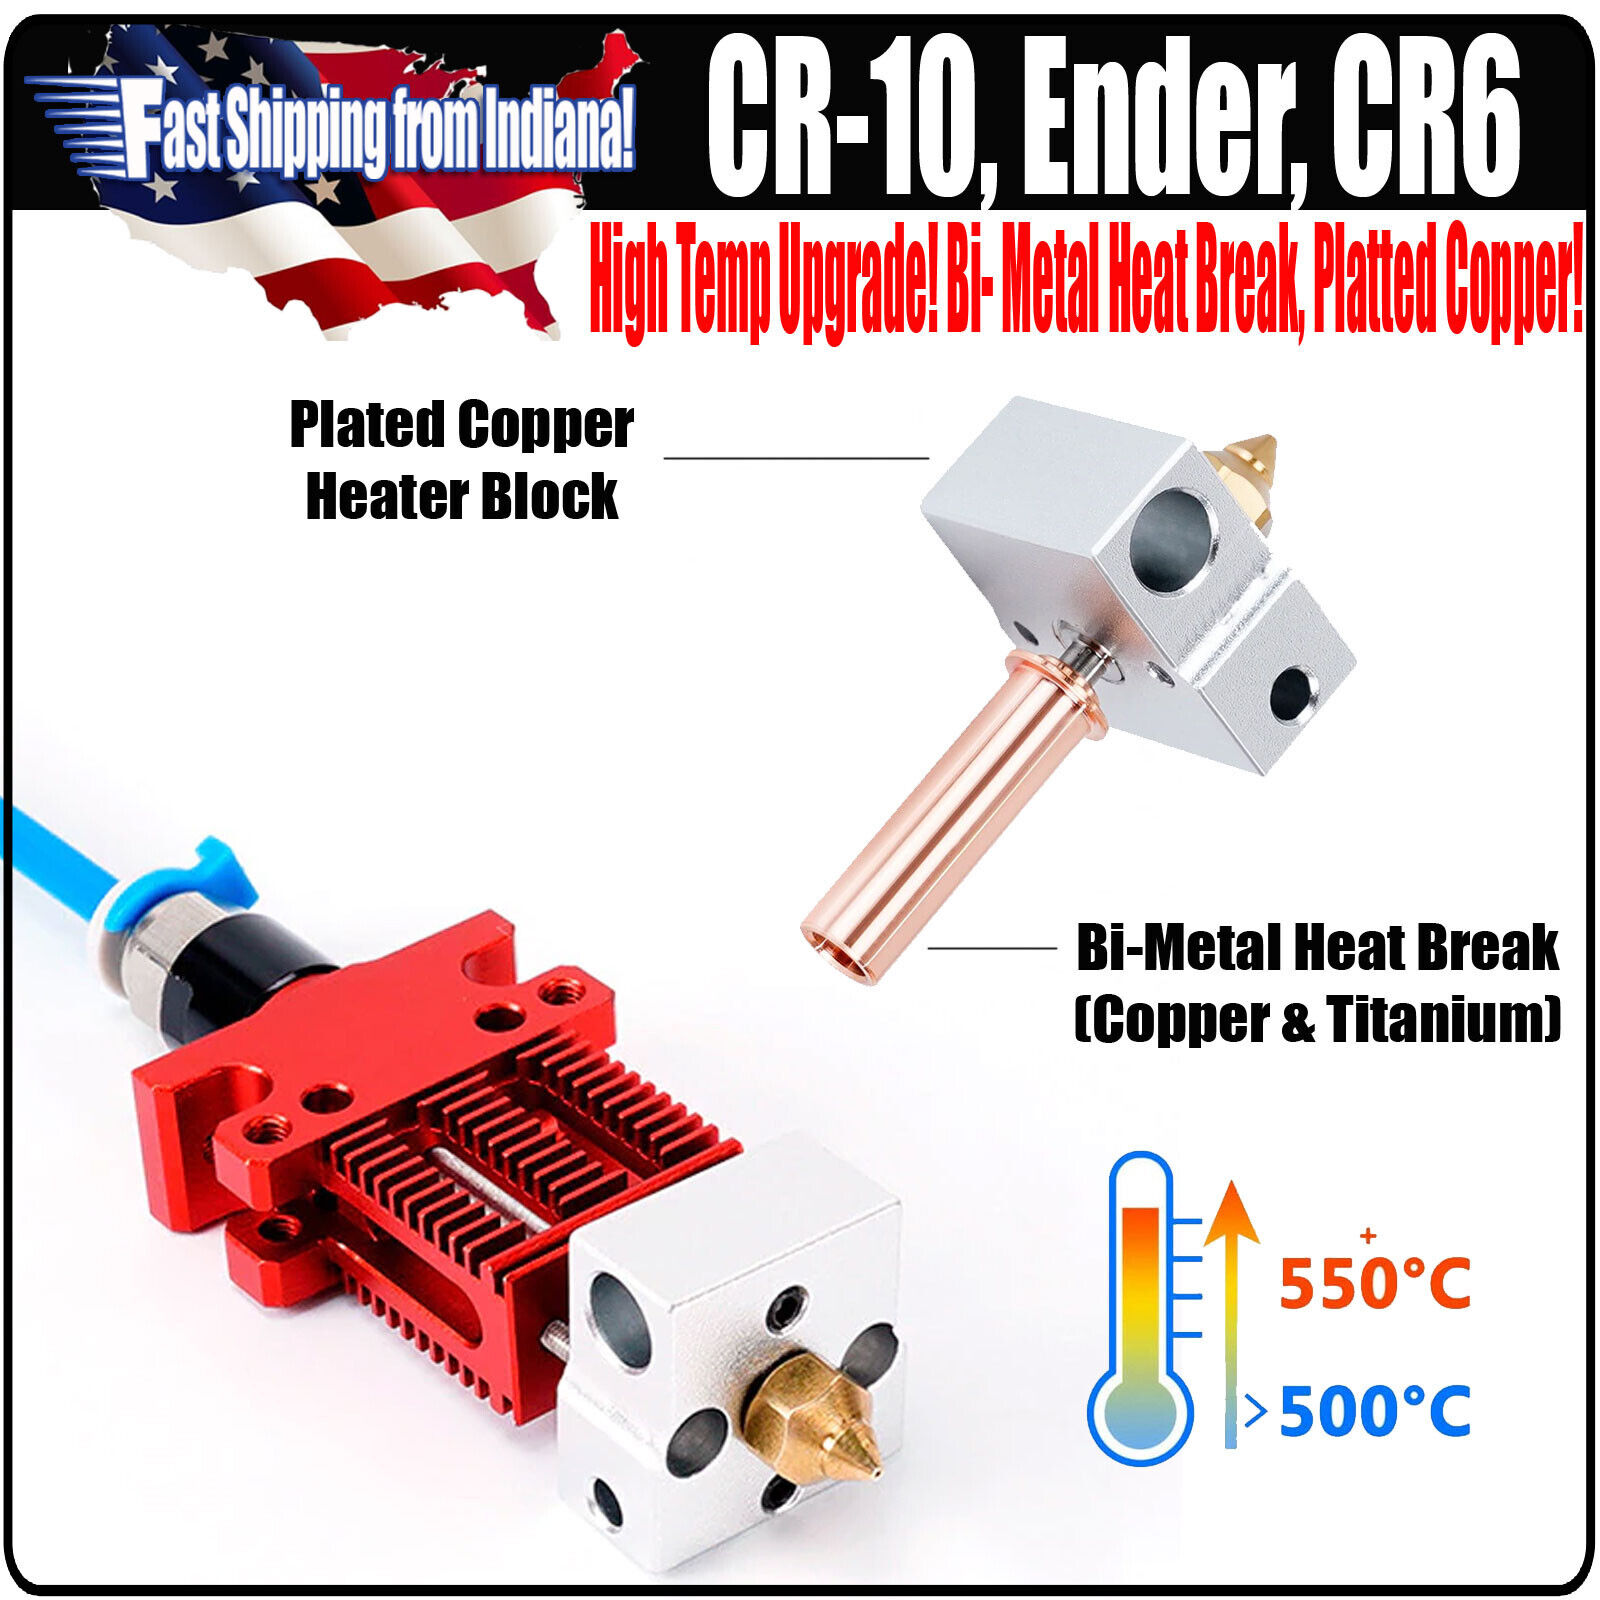 Ender Hotend, High Temp upgrade, Plated Copper Heater Block, Bi-Metal Heatbreak